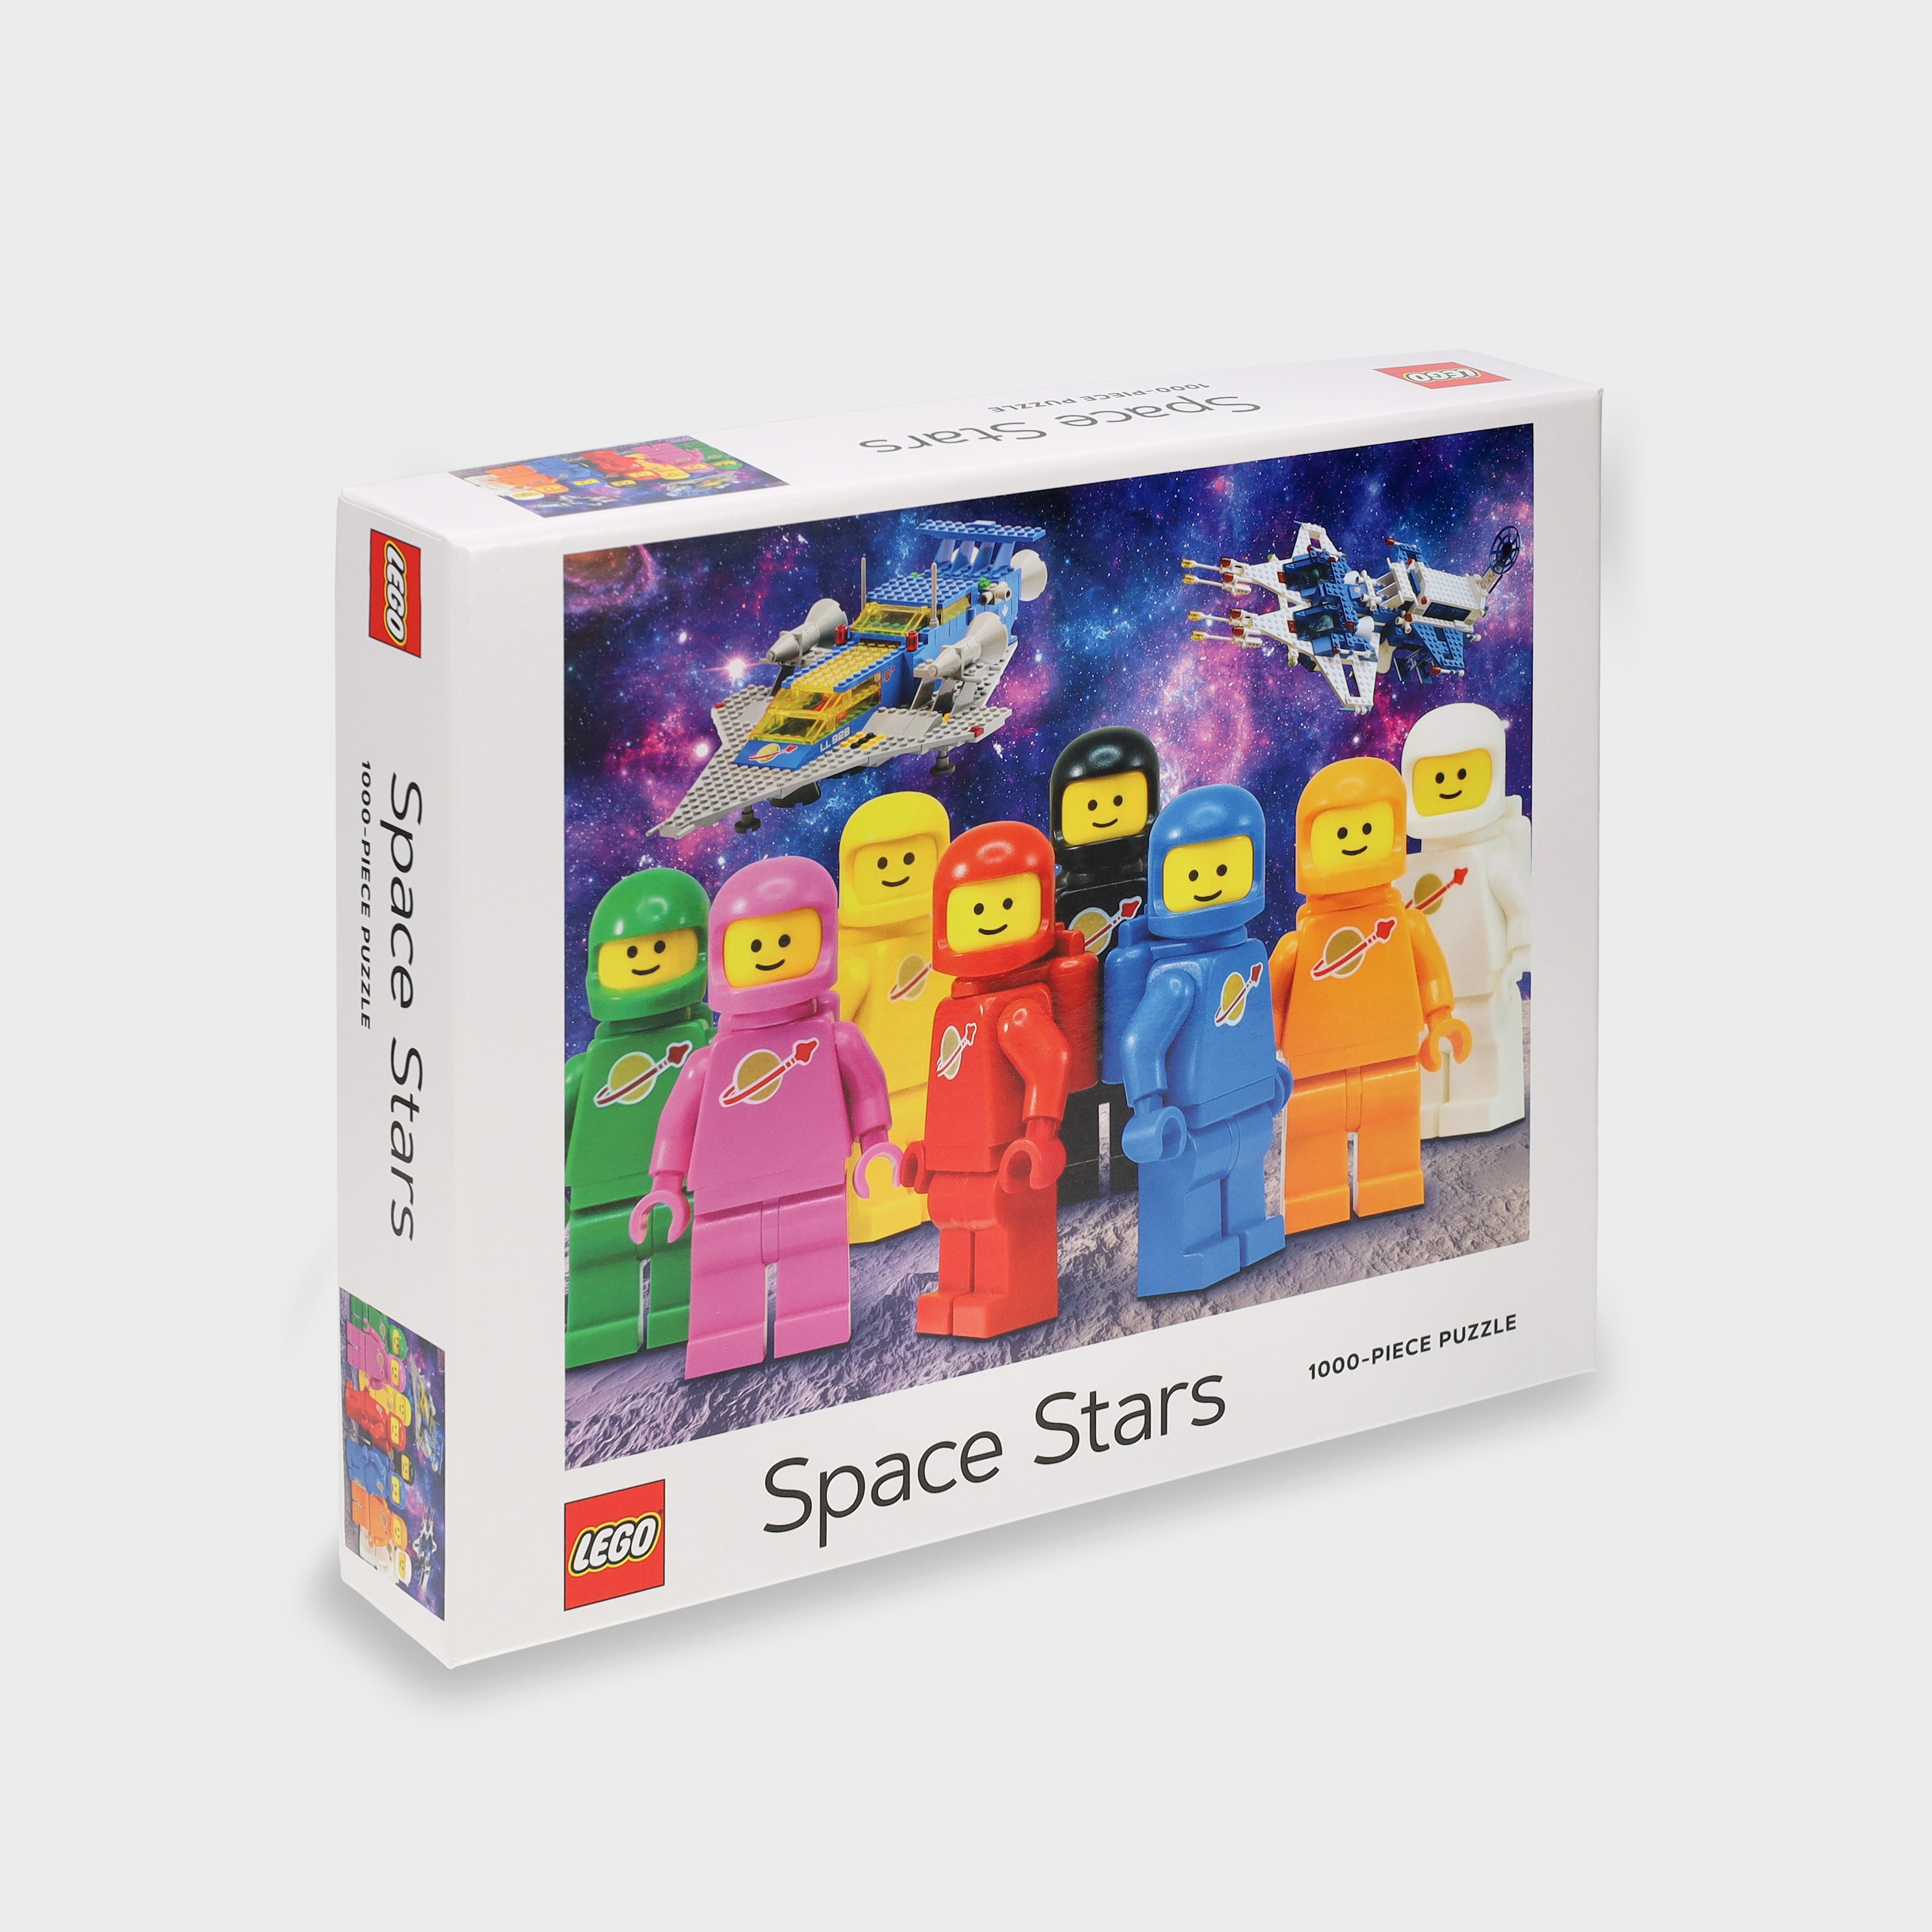 Puzle “Space Stars” (1000 piezas)